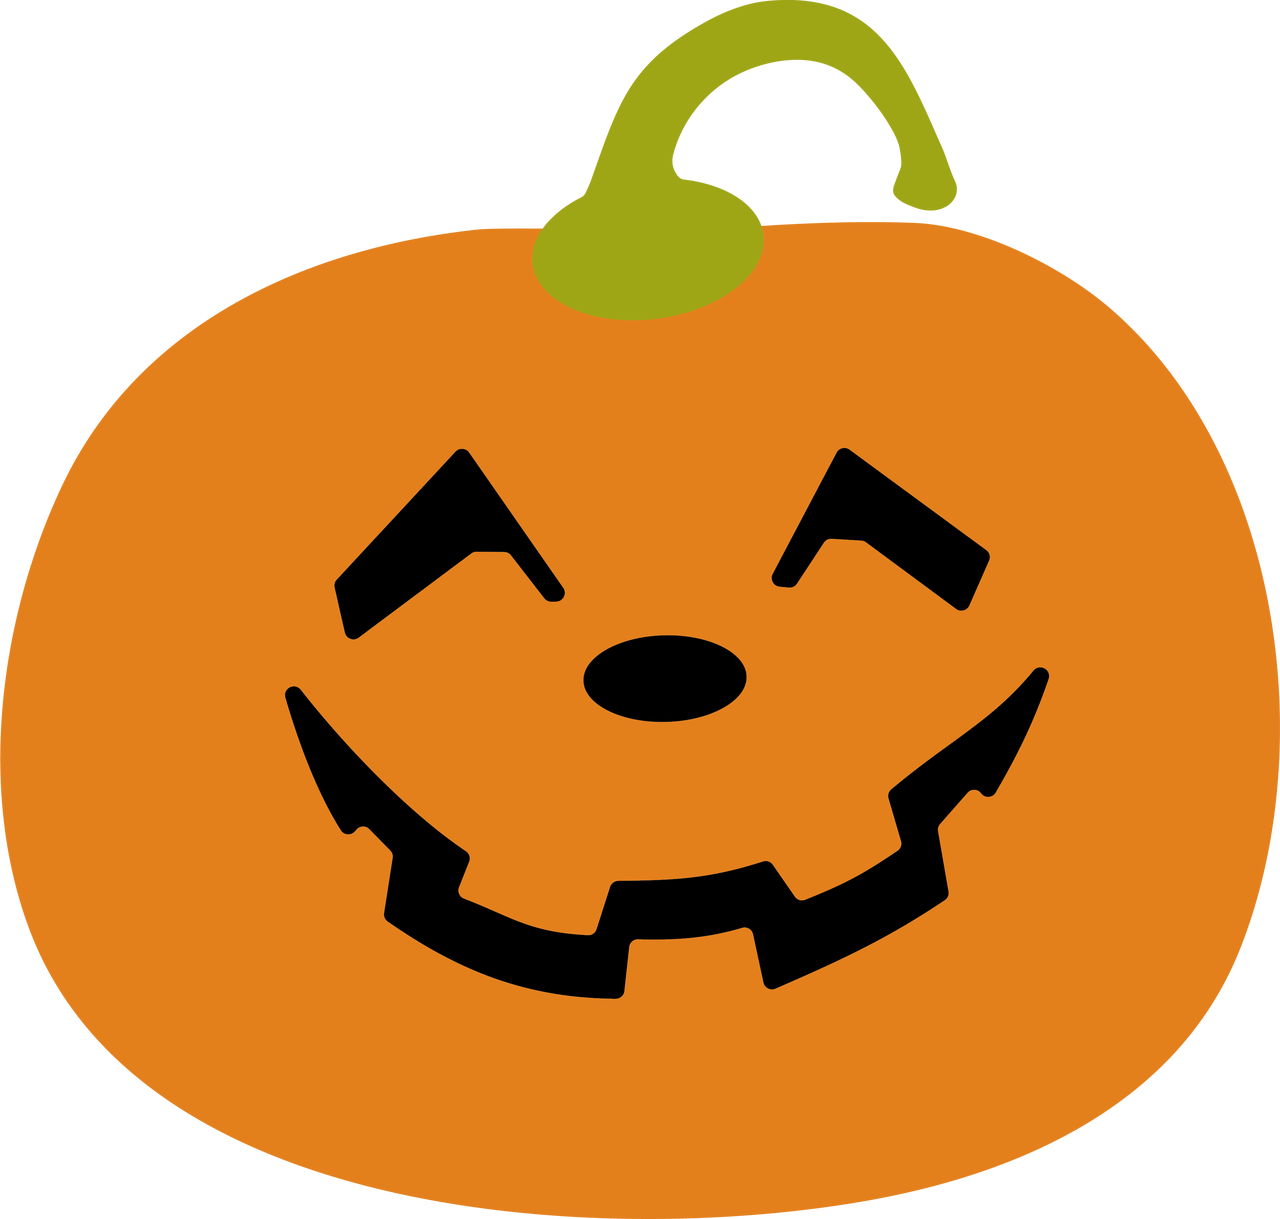 Download Halloween Pumpkin Lantern Graphic | Wallpapers.com